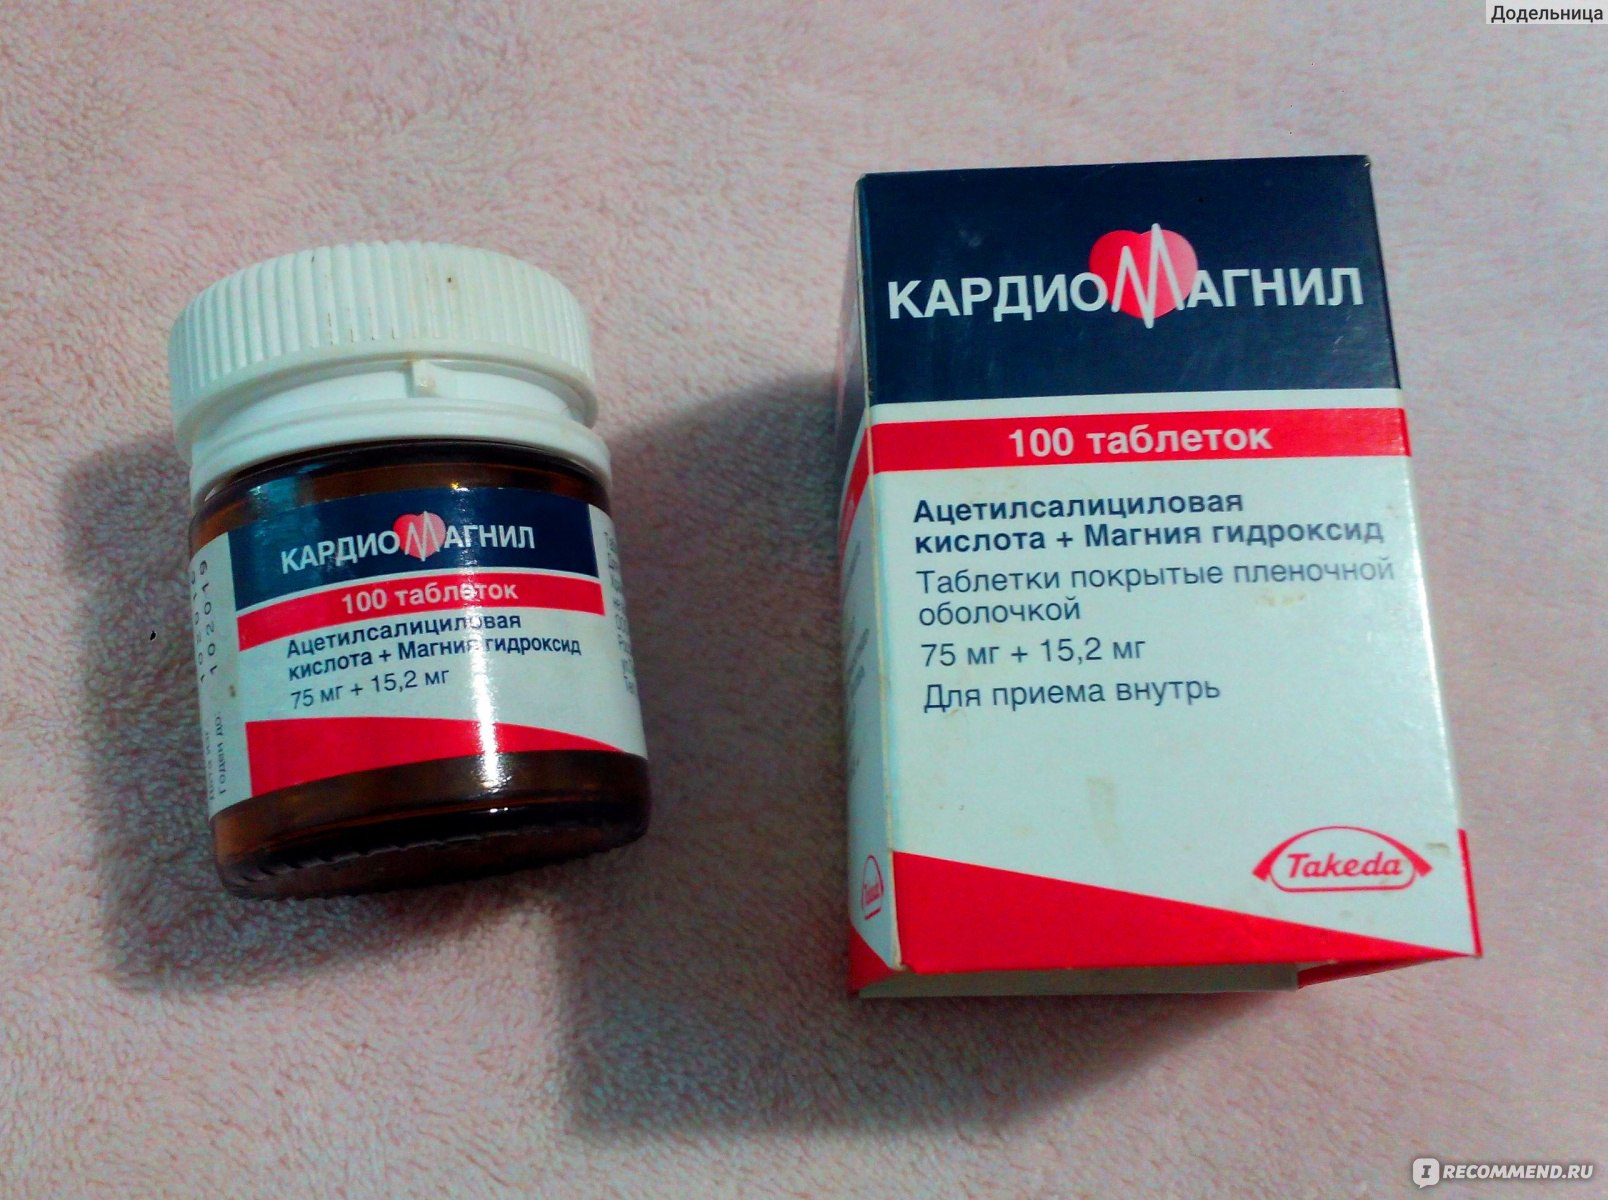 Кардиомагнил: инструкция по применению (таблетки 75 и 150 мг)